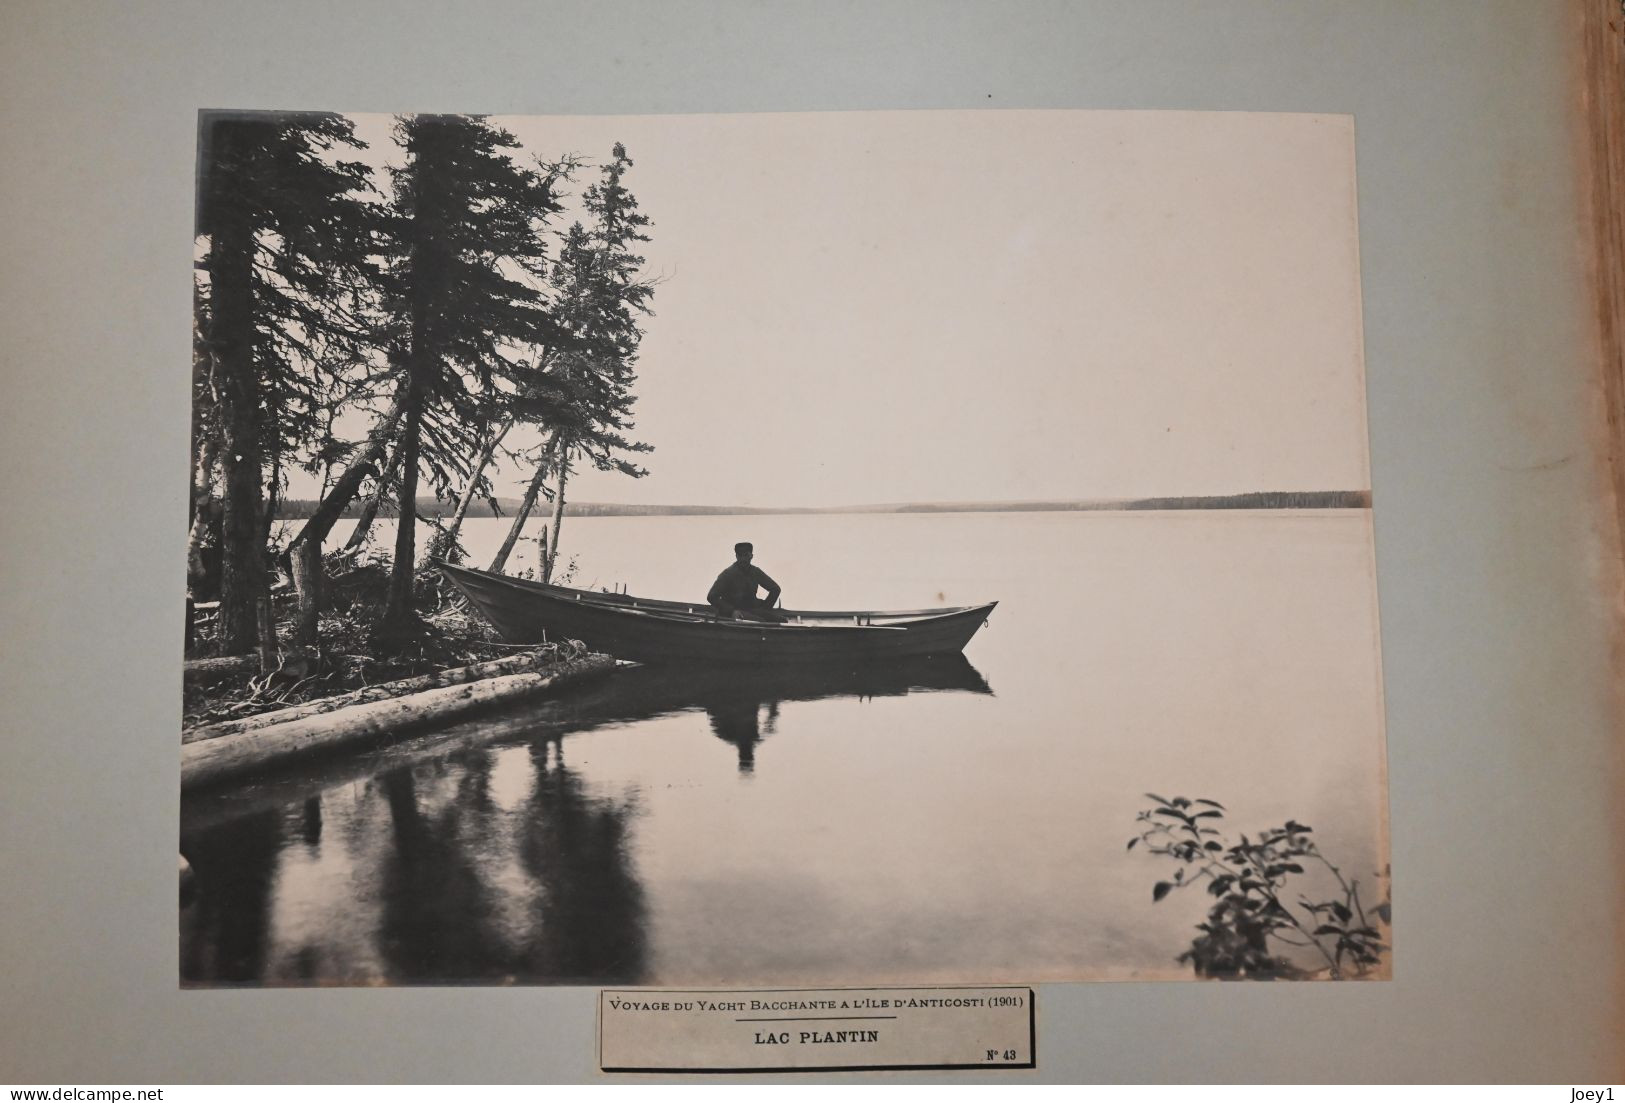 Anticosti ,l'Album photo qui raconte l histoire de l'ile d ' Anticosti après l achat de l ile par Henri Menier en 1895